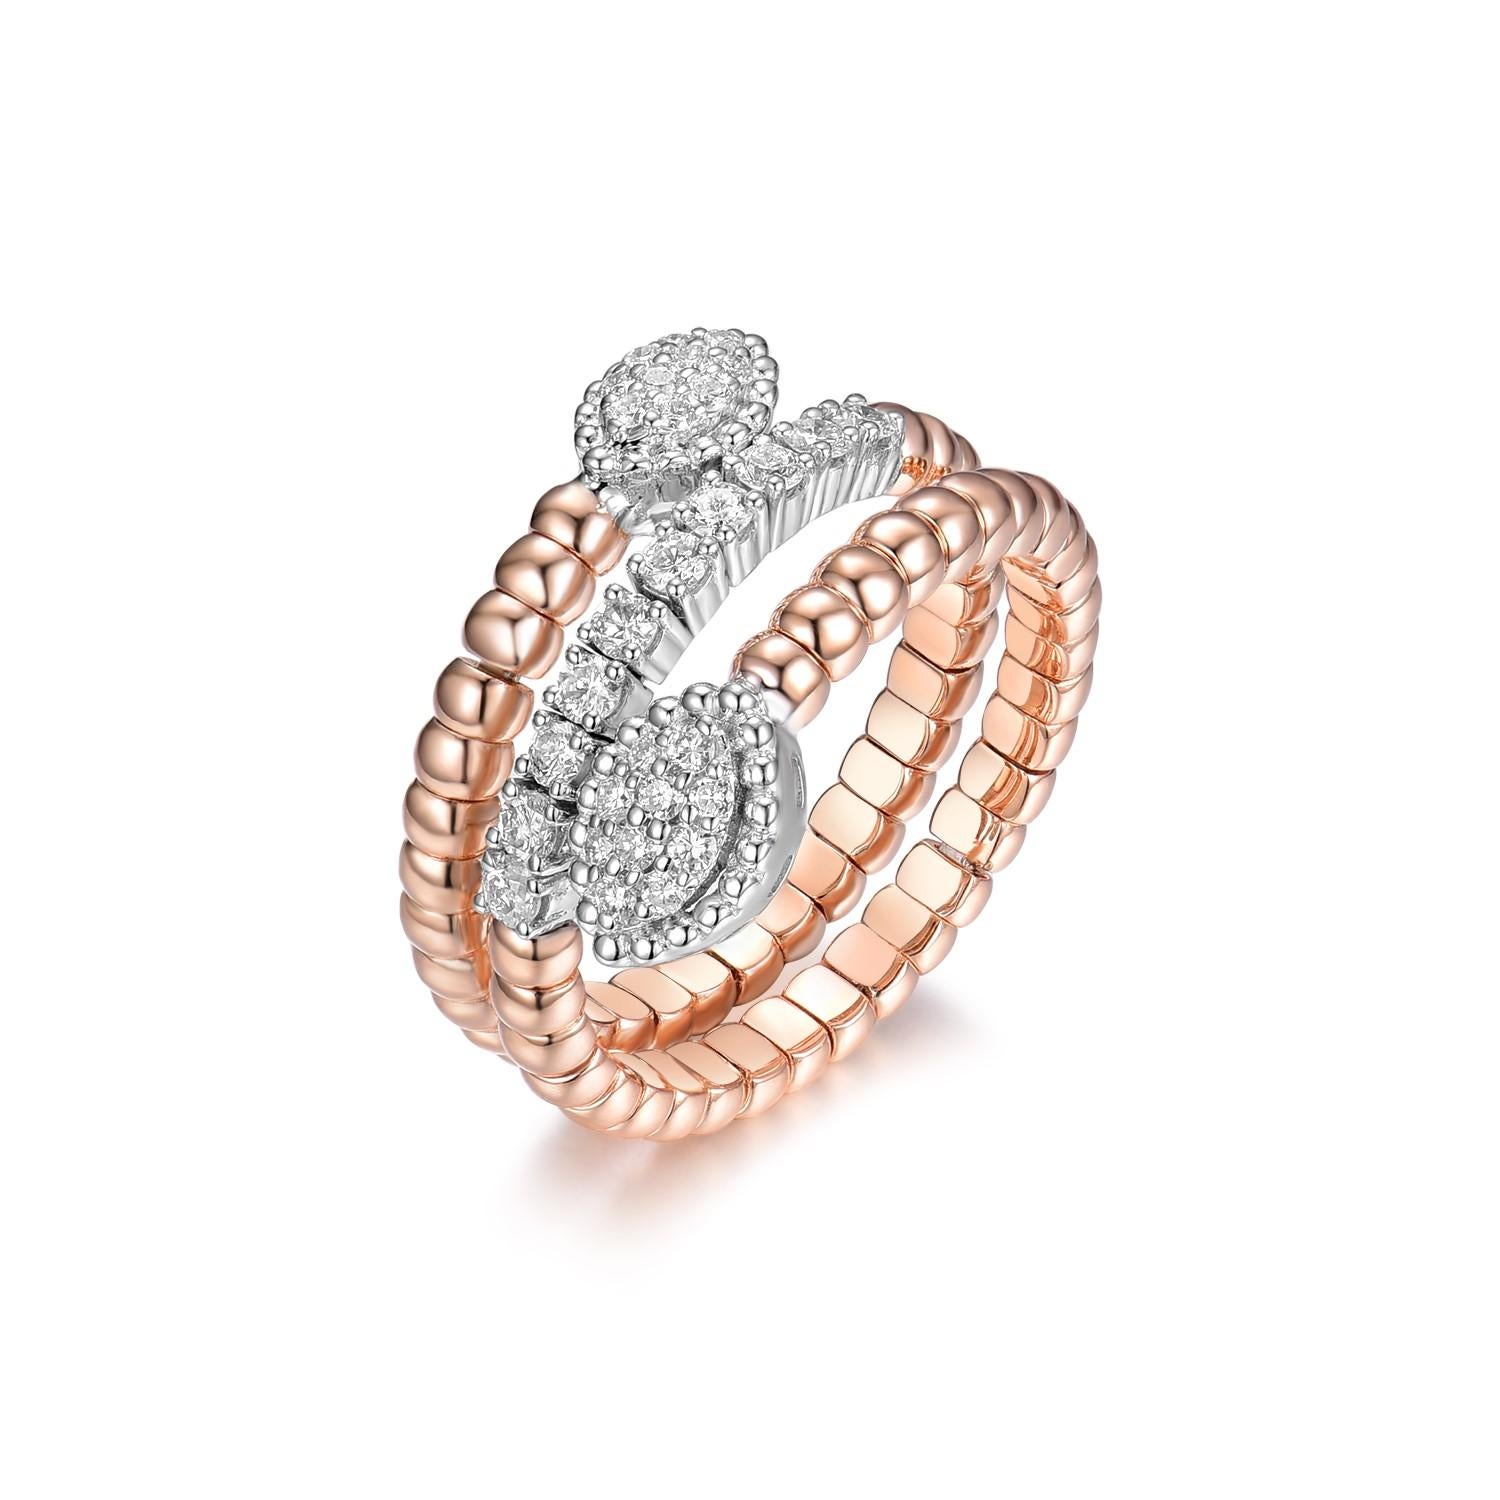 Der Diamantring aus 18 Karat Rosé- und Weißgold ist ein atemberaubendes Schmuckstück, das eine wunderschöne Kombination aus Rosé- und Weißgold präsentiert. Dieser mit viel Liebe zum Detail gefertigte Ring enthält 30 schillernde Diamanten mit einem